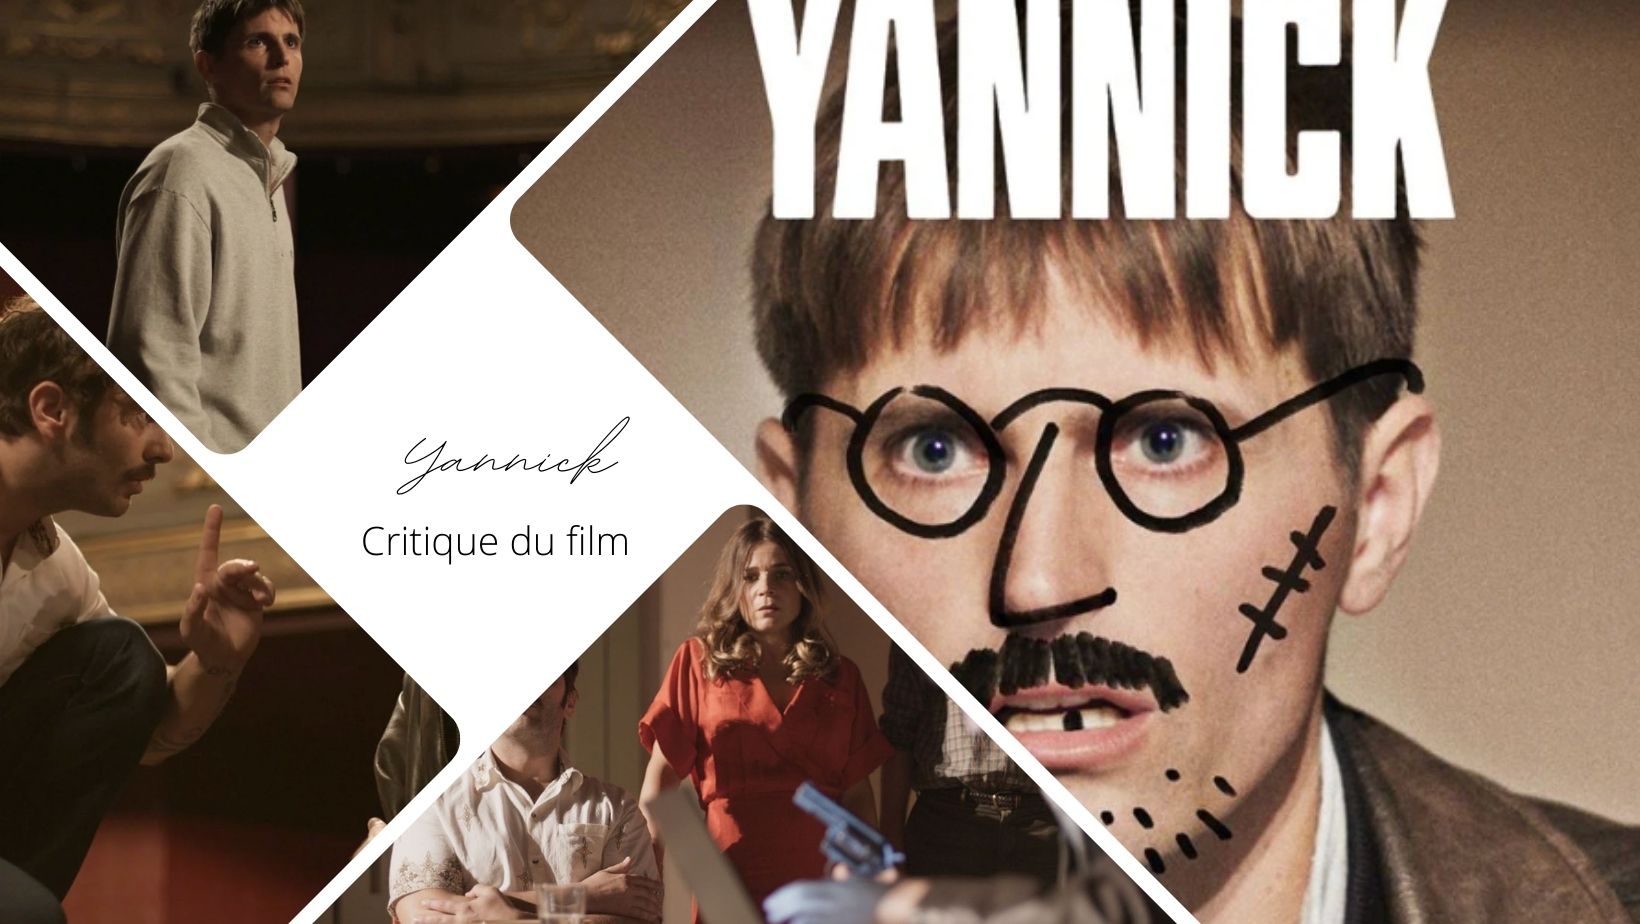 Yannick de Quentin Dupieux - Critique du film